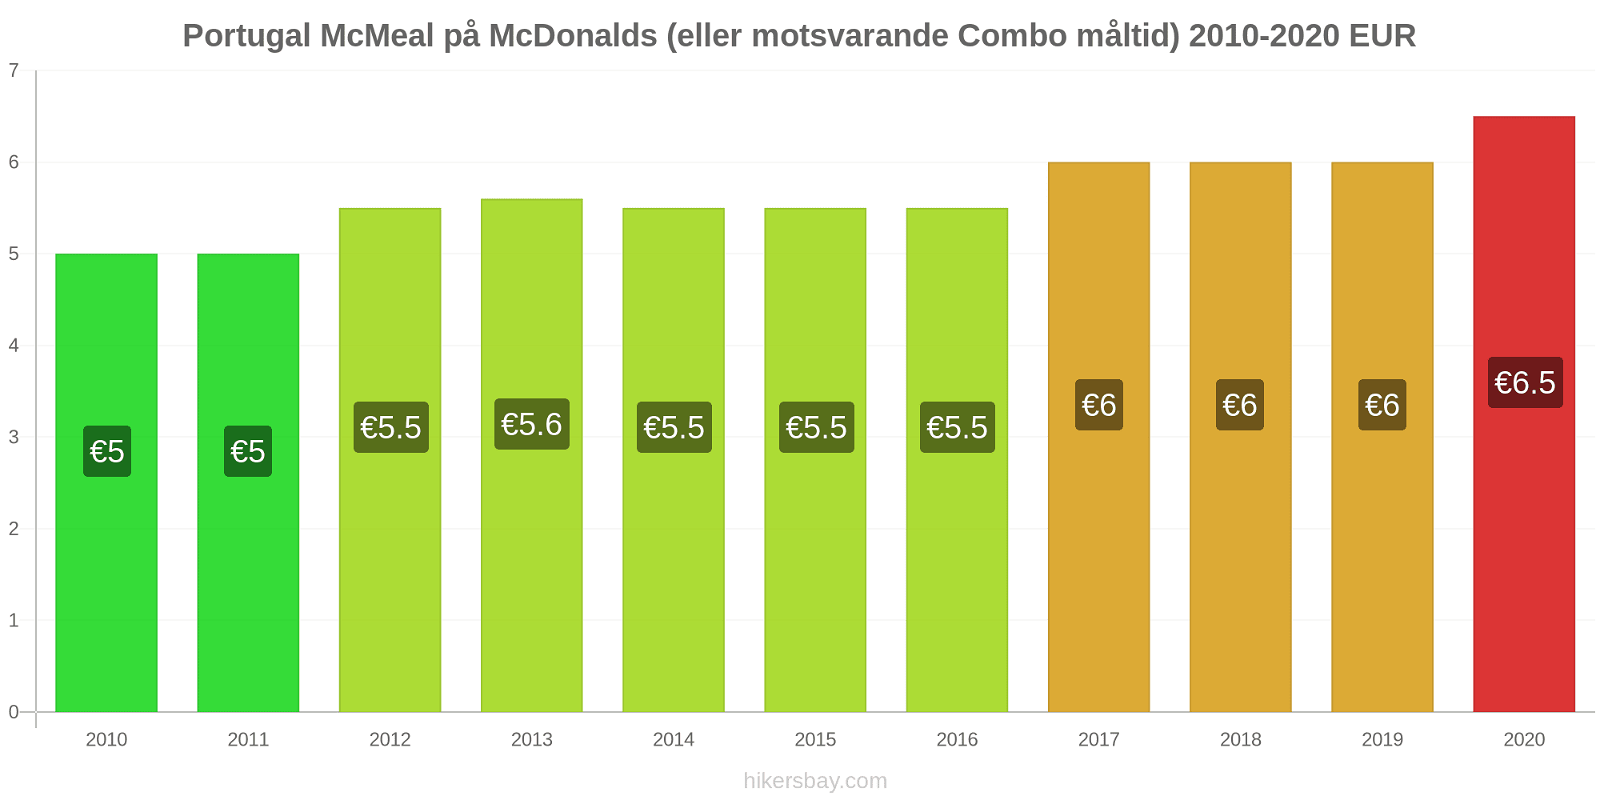 Portugal prisförändringar McMeal på McDonalds (eller motsvarande Combo måltid) hikersbay.com